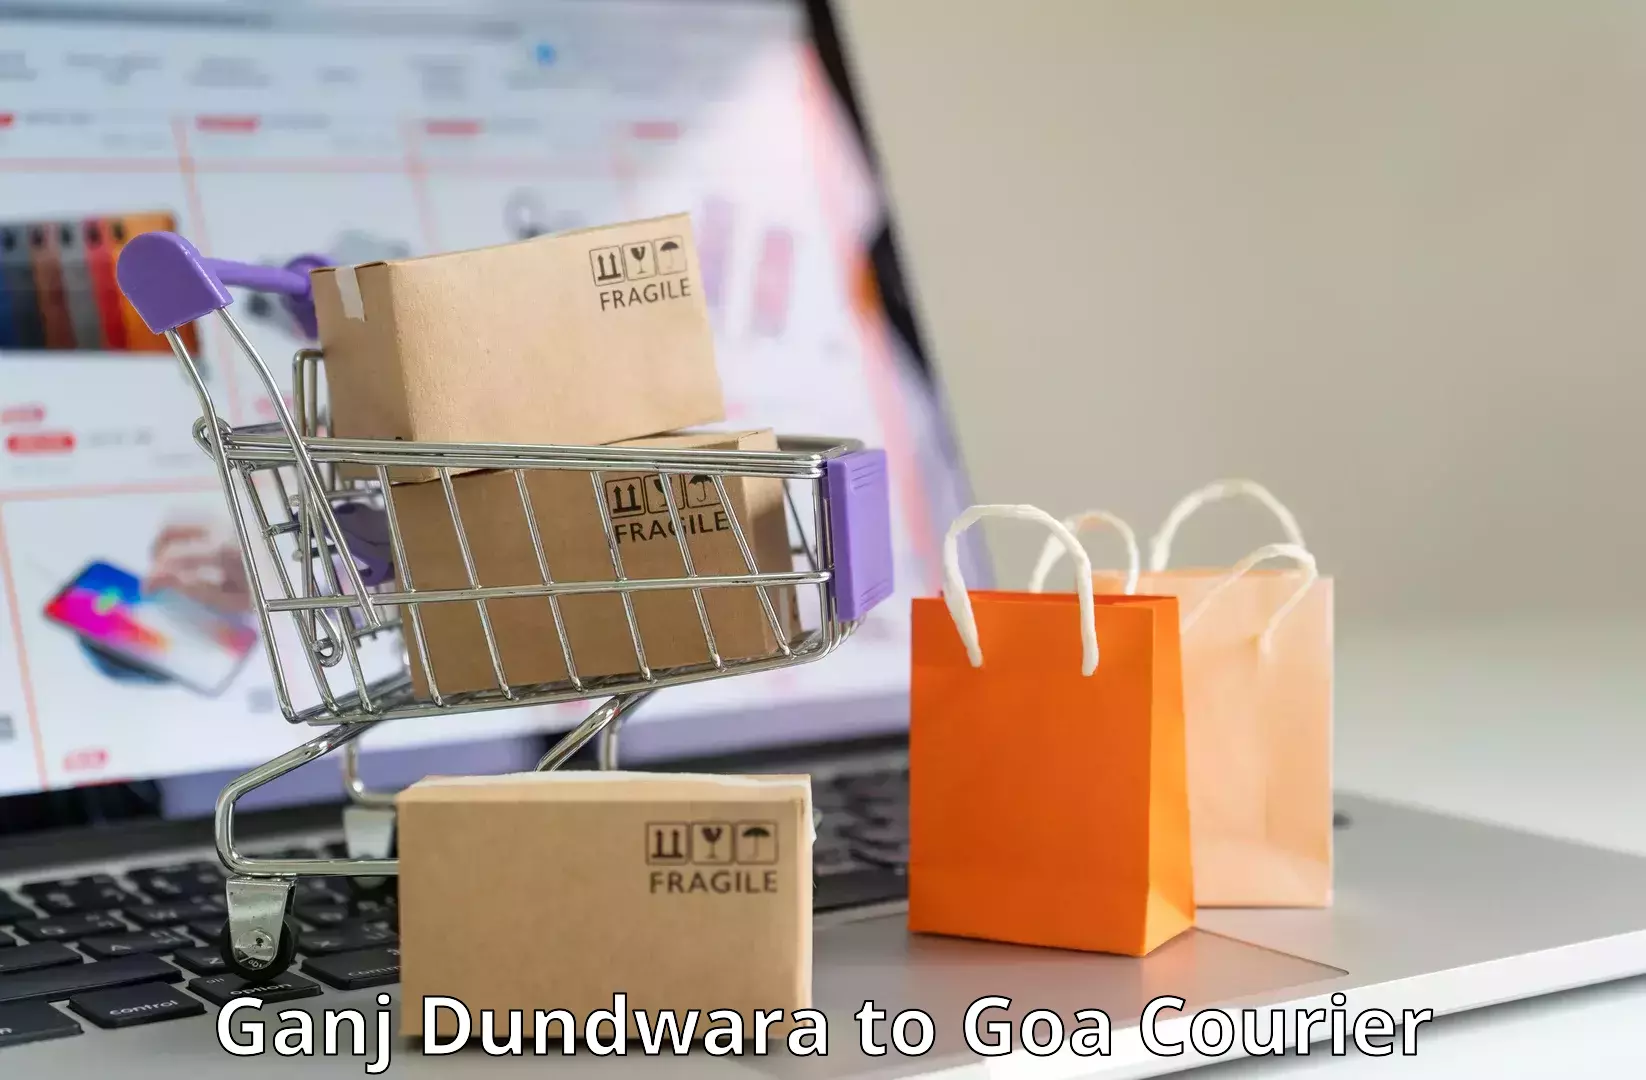 Smart parcel delivery Ganj Dundwara to Bicholim